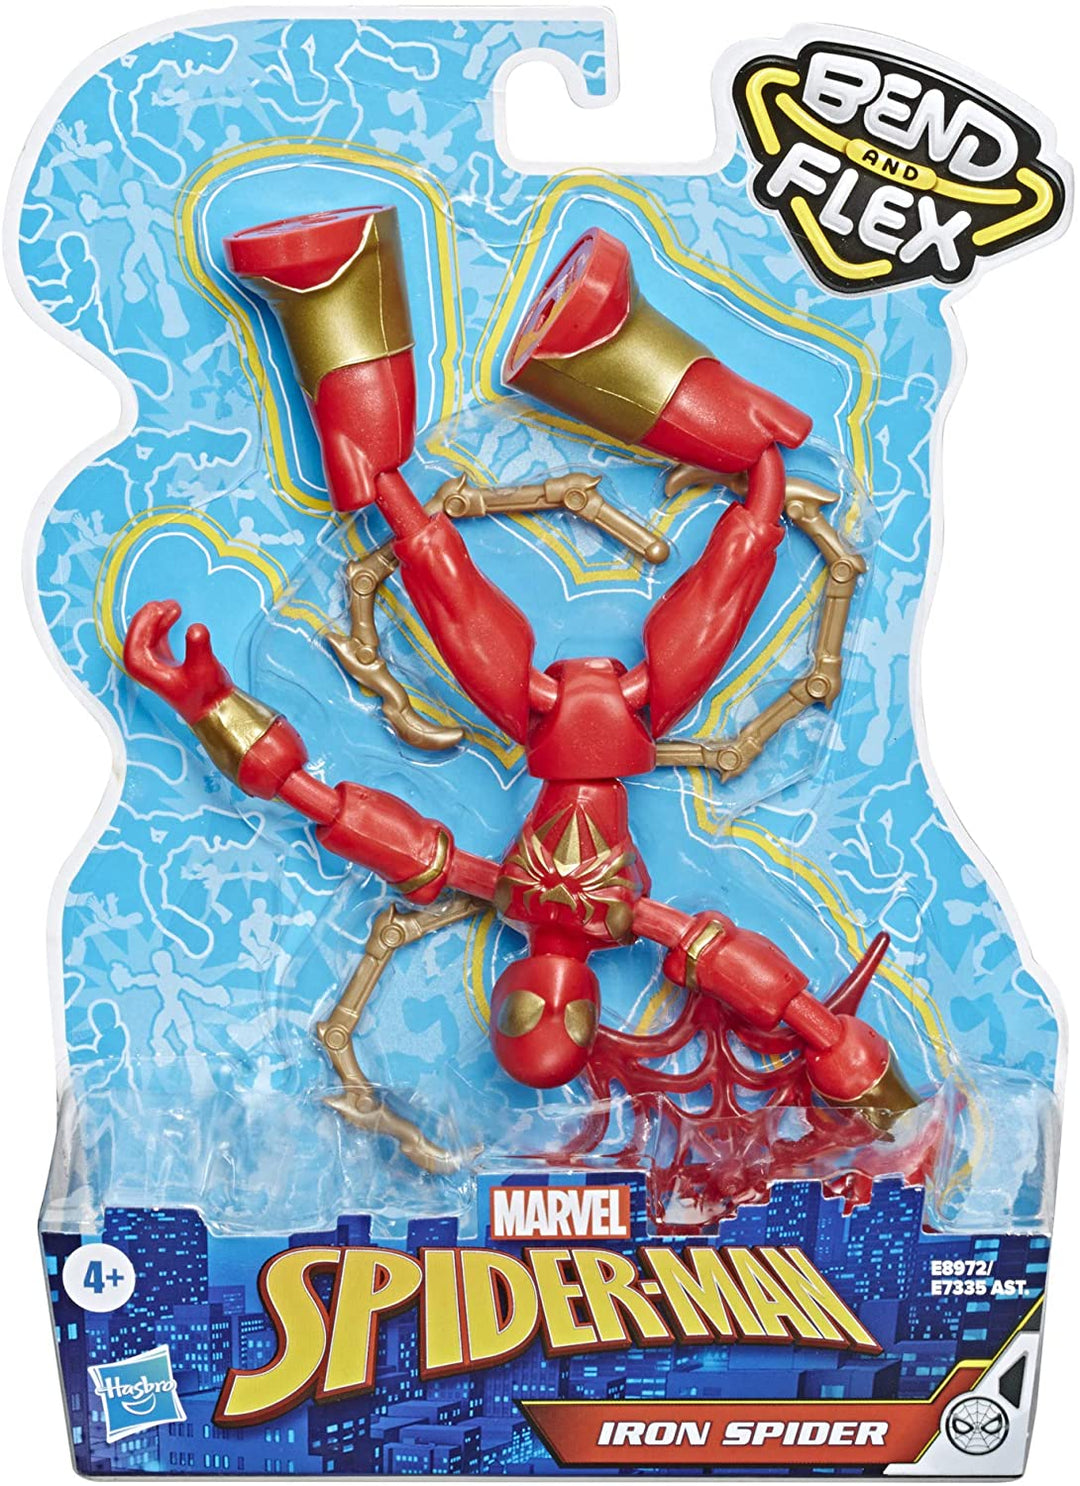 Marvel Spider-Man Bend en Flex Iron Spider Action Figure Toy, 6-inch flexibel figuur